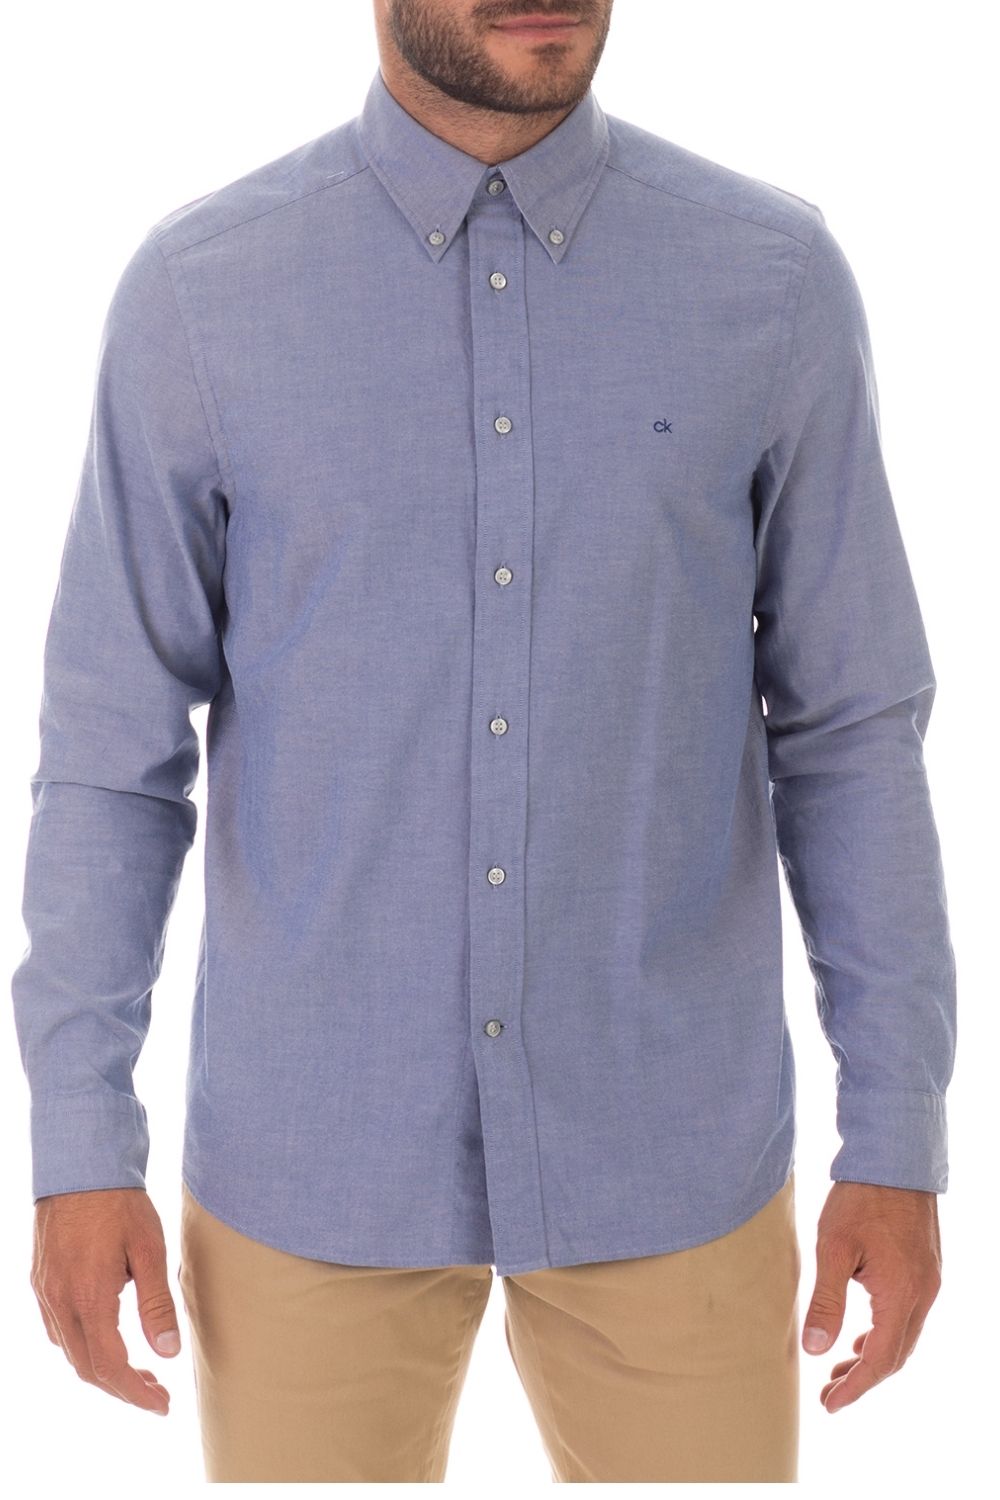 Ανδρικά/Ρούχα/Πουκάμισα/Μακρυμάνικα CK - Ανδρικό πουκάμισο CK γαλάζιο